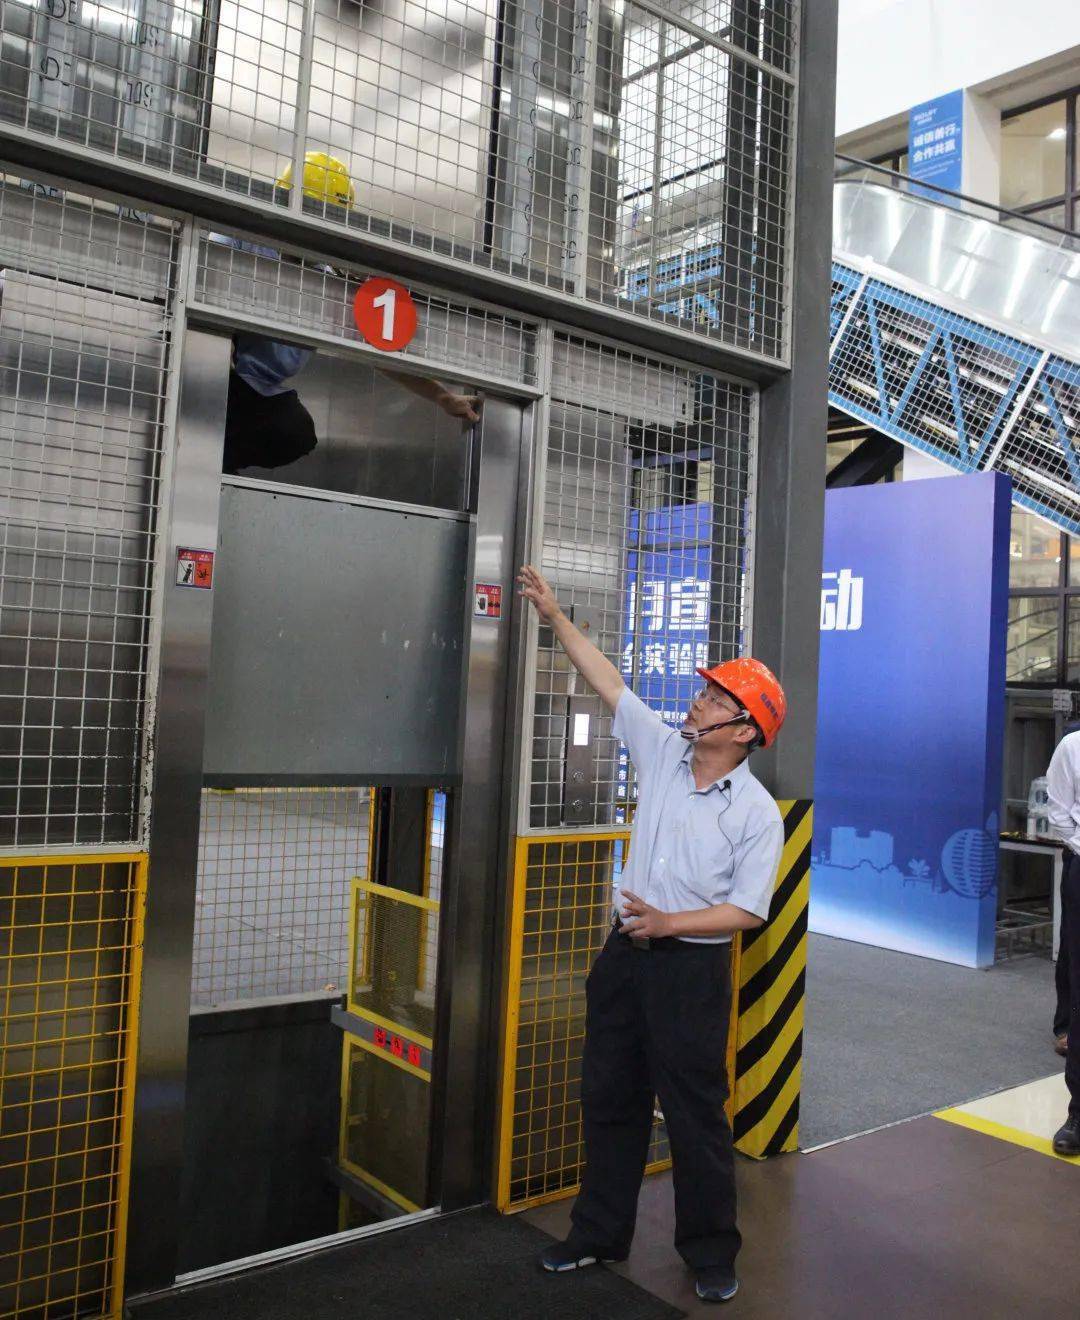 特种设备应急处置中心)及杭州西奥电梯有限公司举办电梯现场实验活动